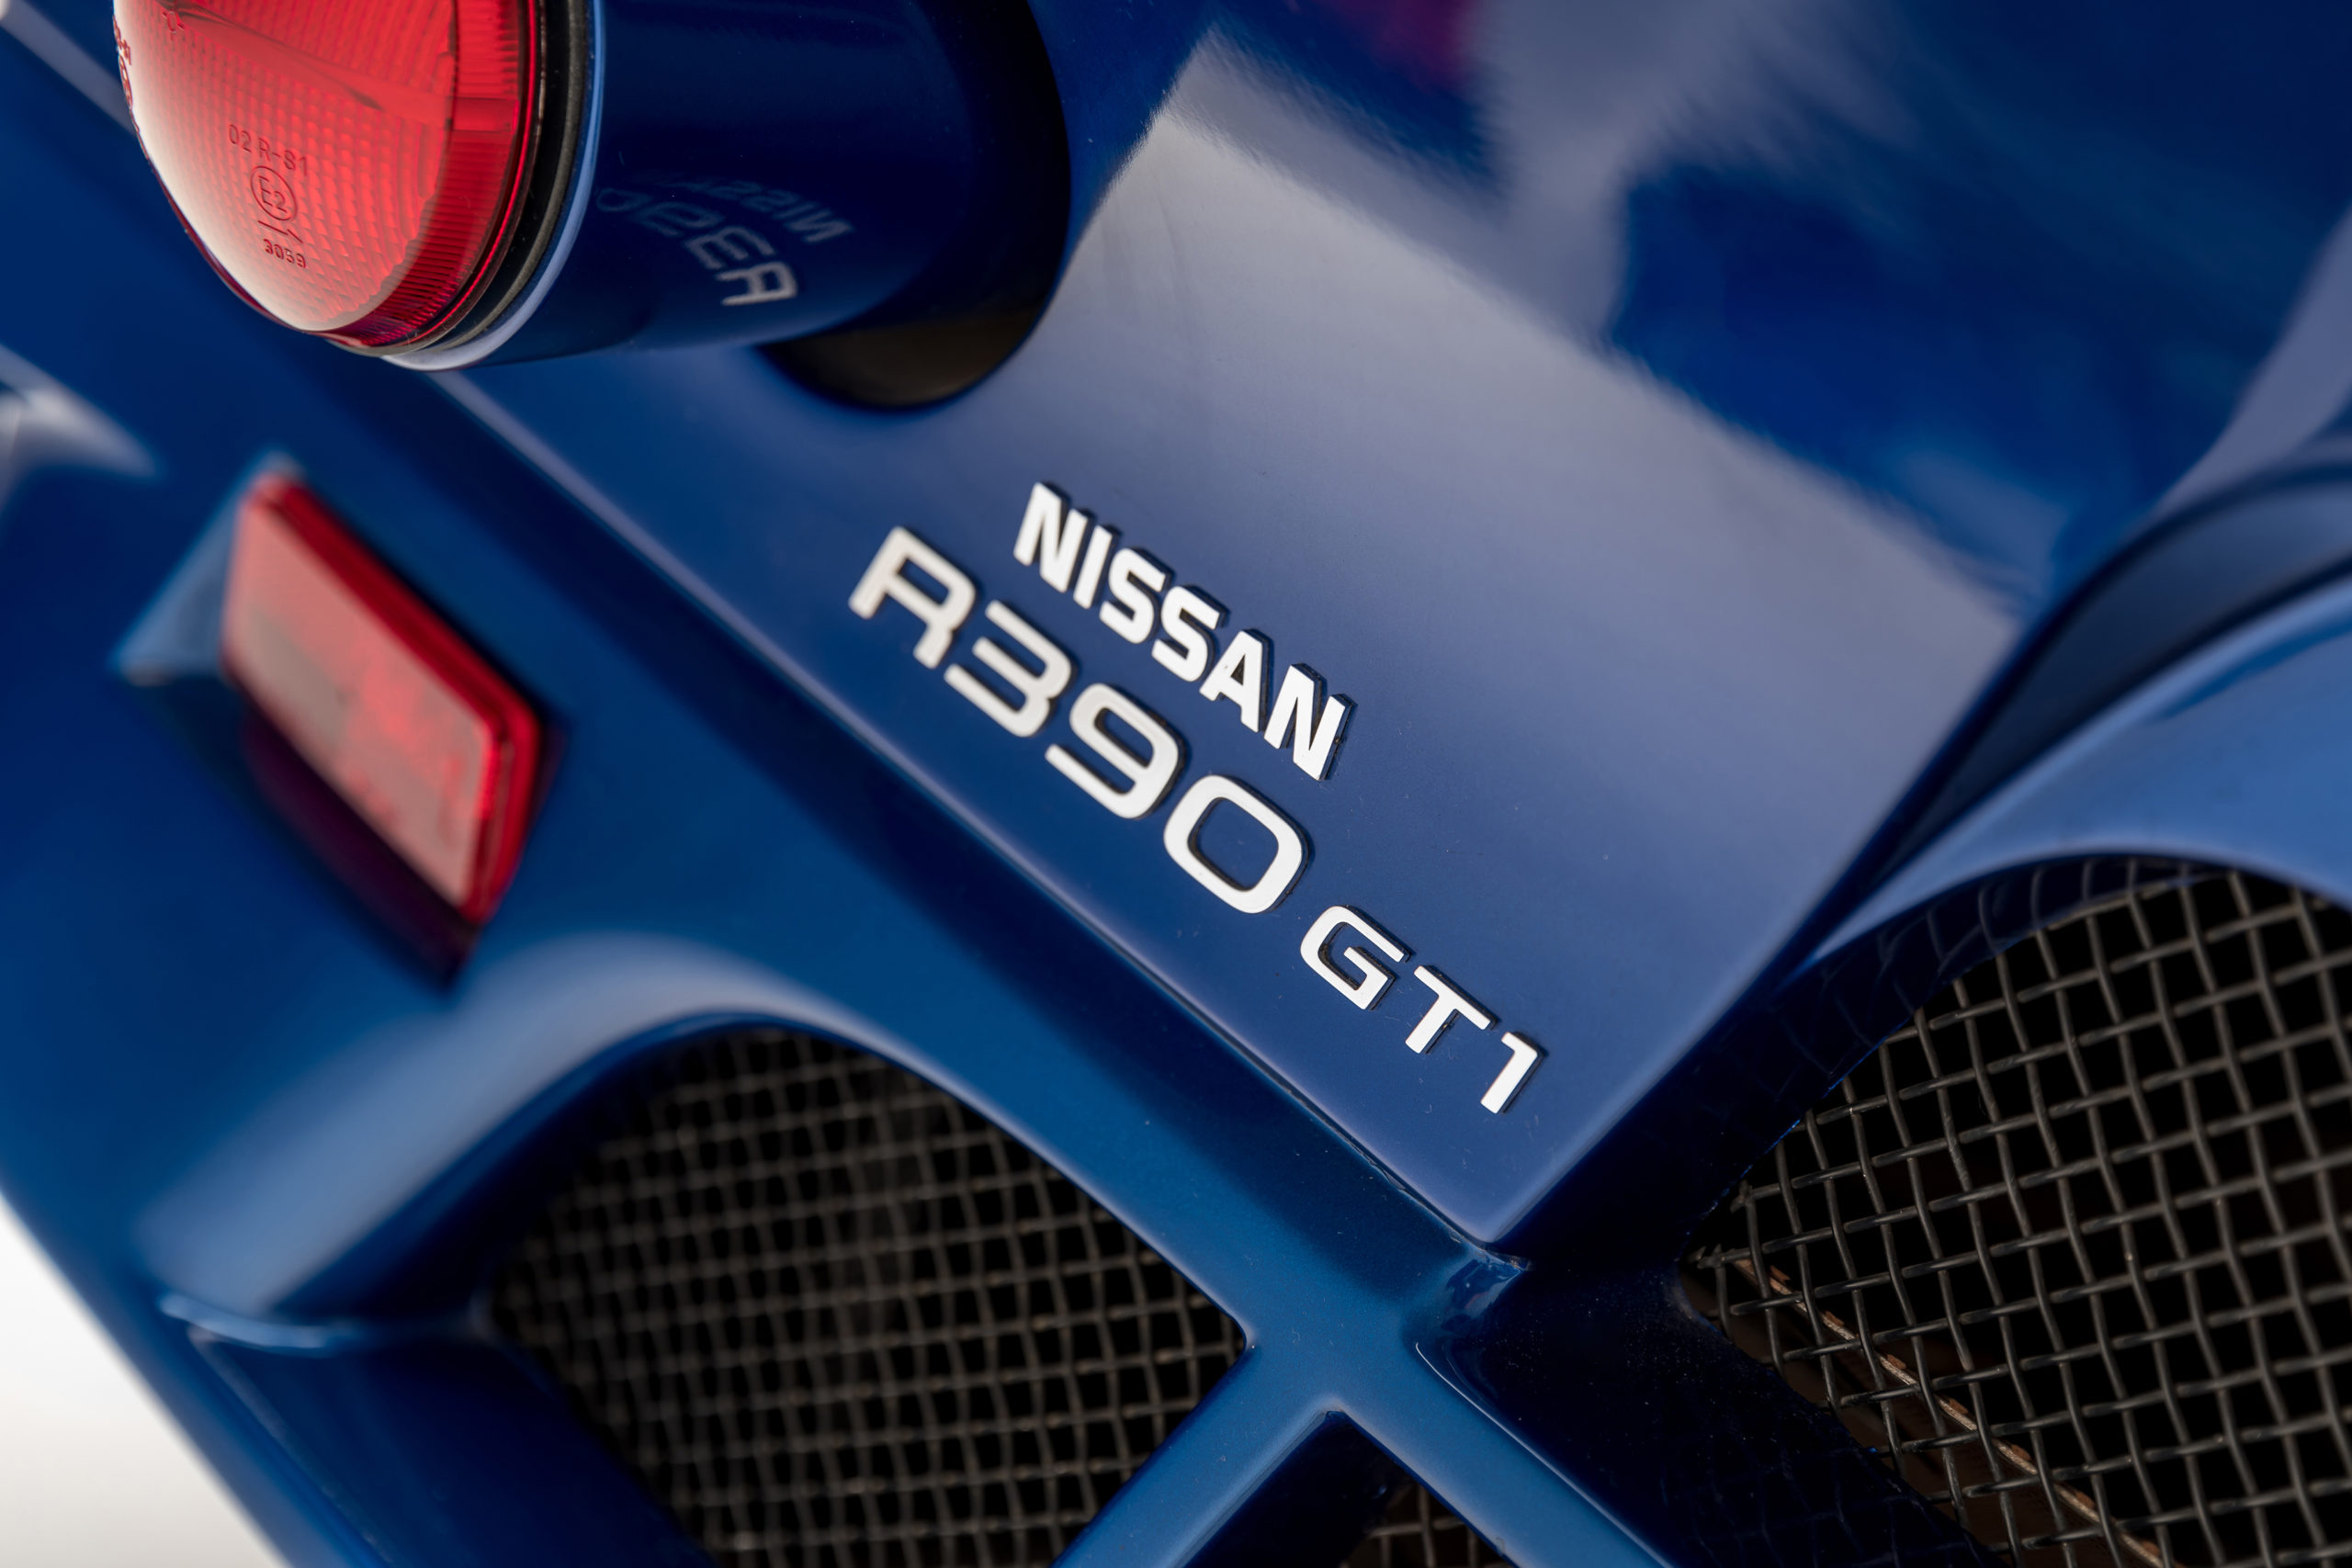 Nissan R390 GT1 logo